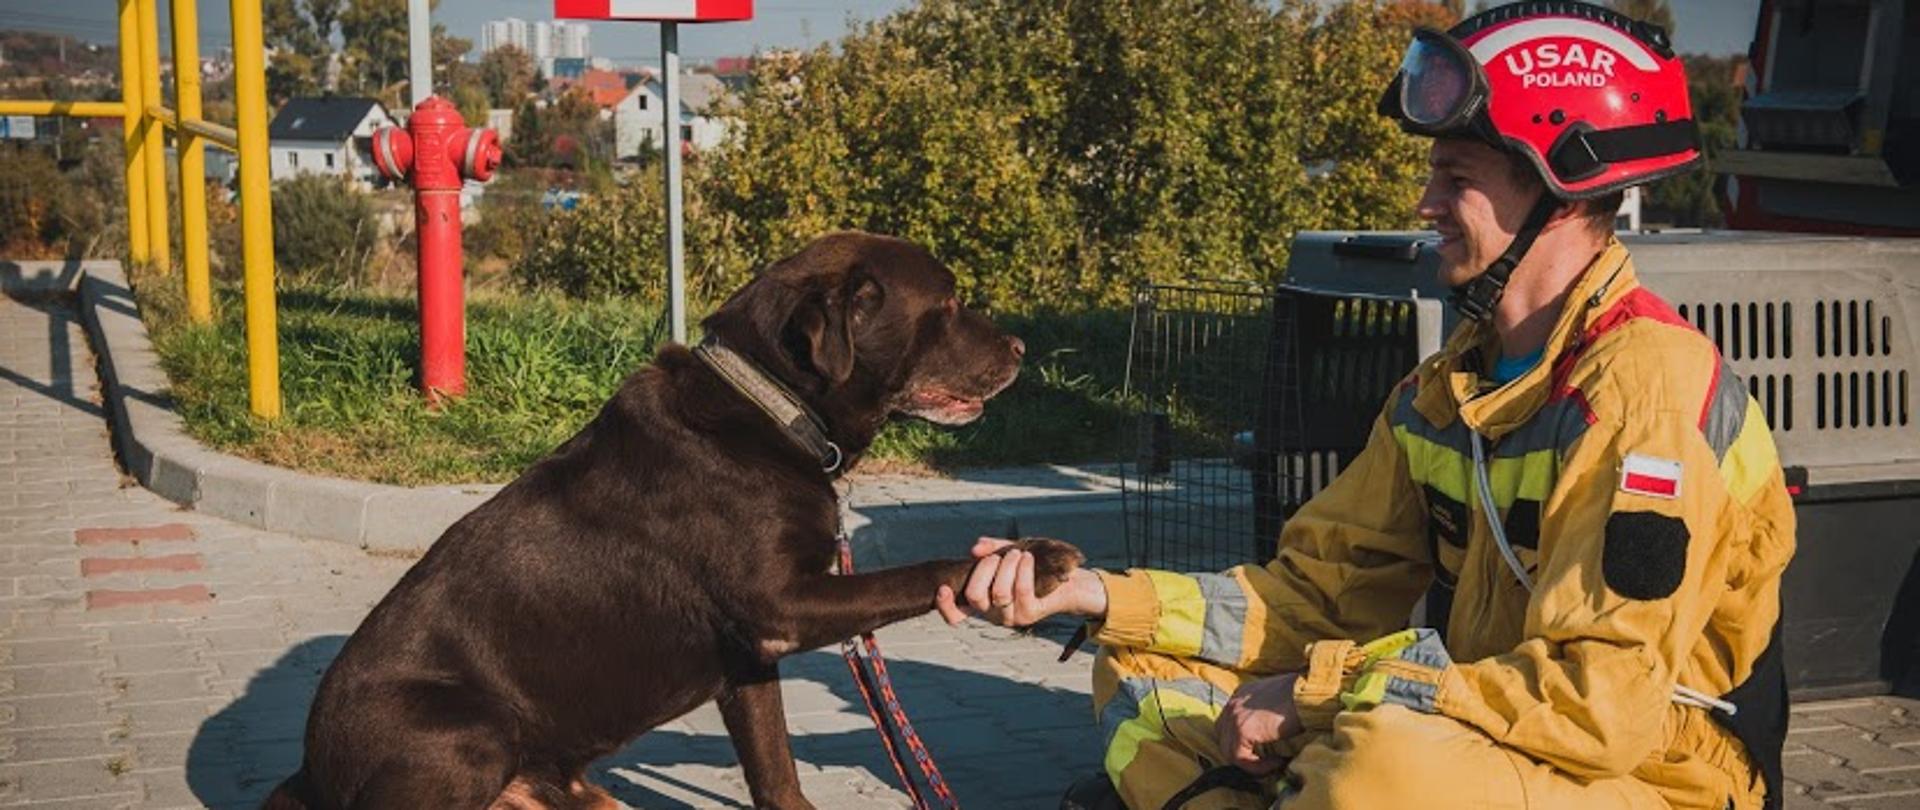 Pies ratownik wraz z siedzącym opiekunem, strażakiem. Pies podaje człowiekowi łapę